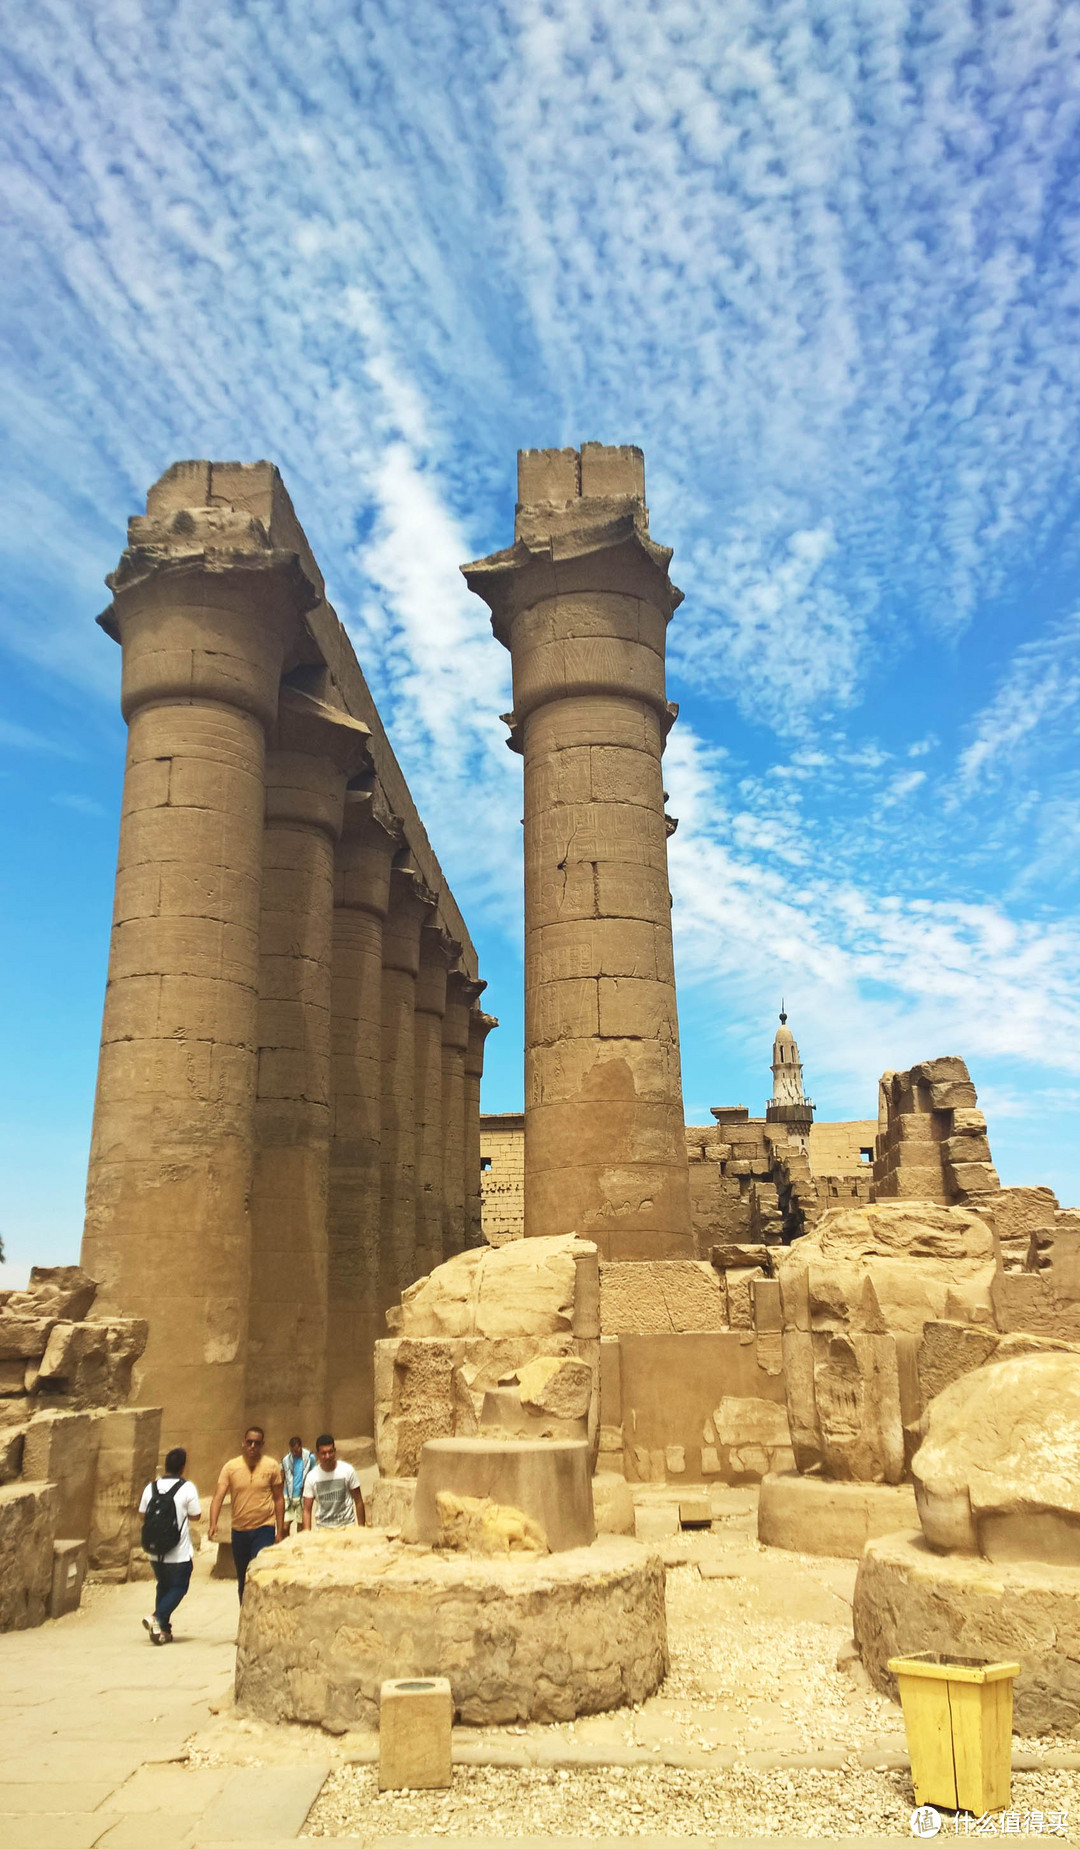 北非魅影——入埃及记